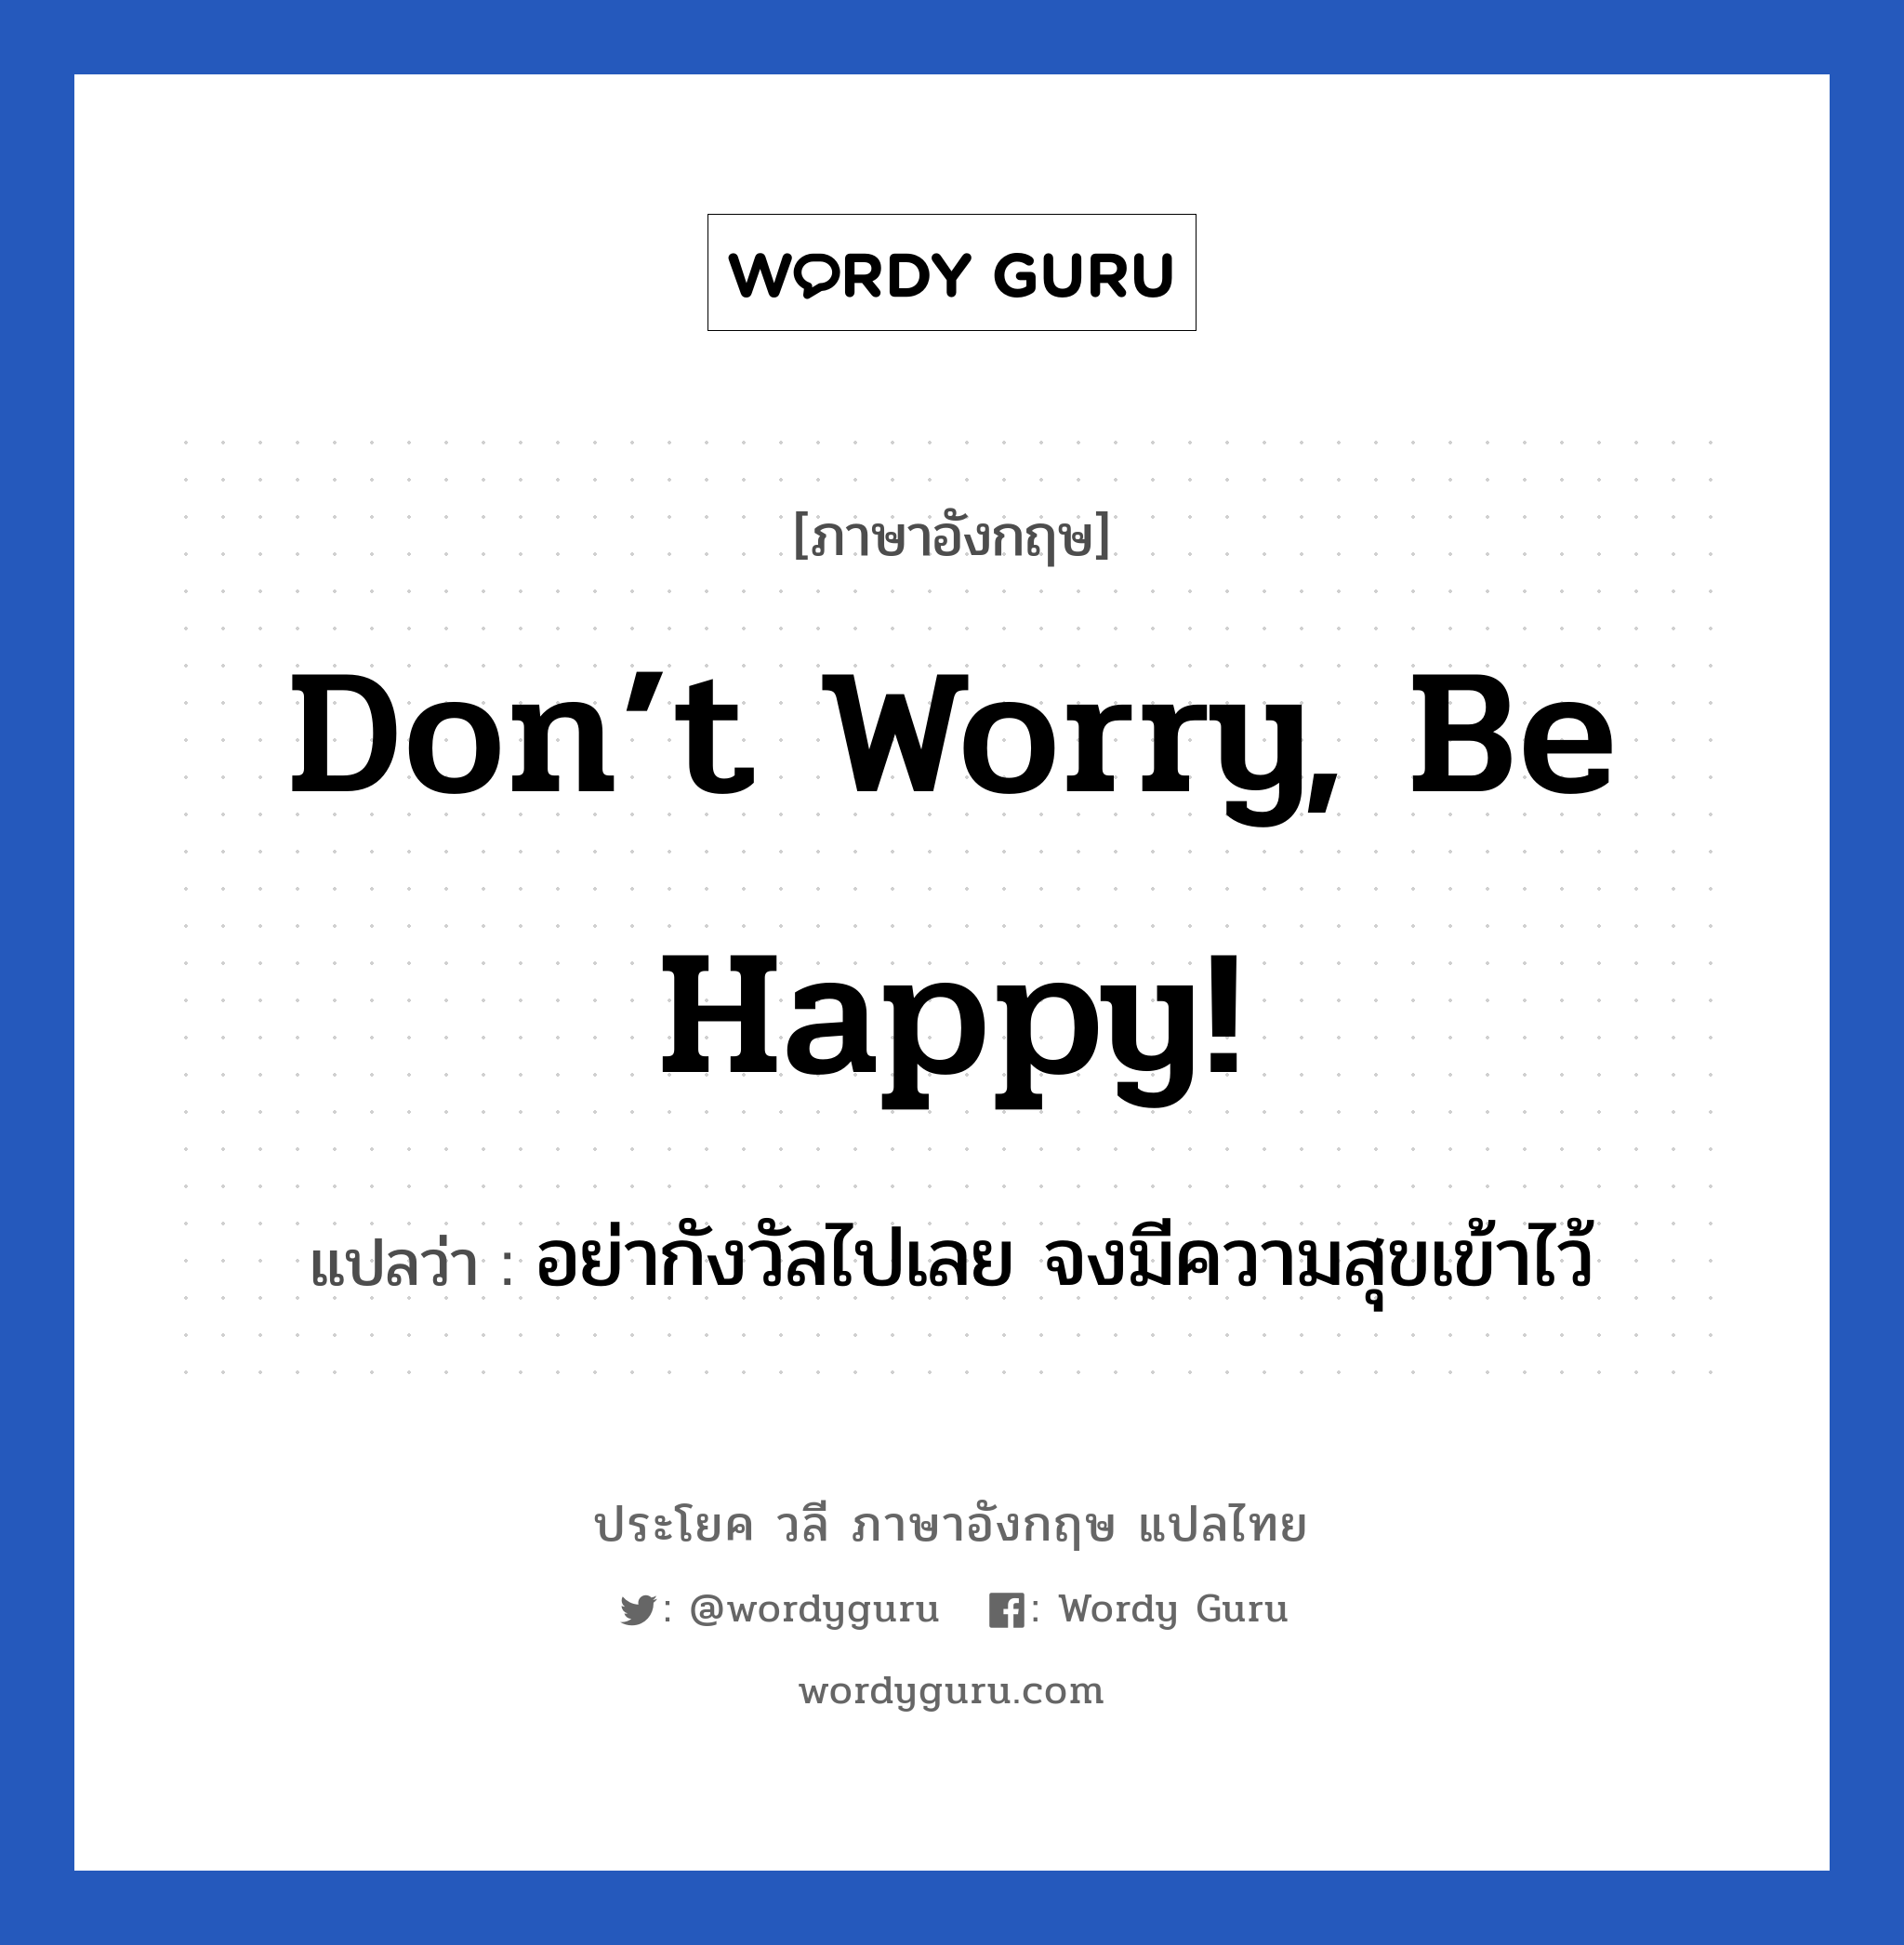 อย่ากังวัลไปเลย จงมีความสุขเข้าไว้ ภาษาอังกฤษ?, วลีภาษาอังกฤษ อย่ากังวัลไปเลย จงมีความสุขเข้าไว้ แปลว่า Don’t worry, be happy! หมวด ให้กำลังใจ